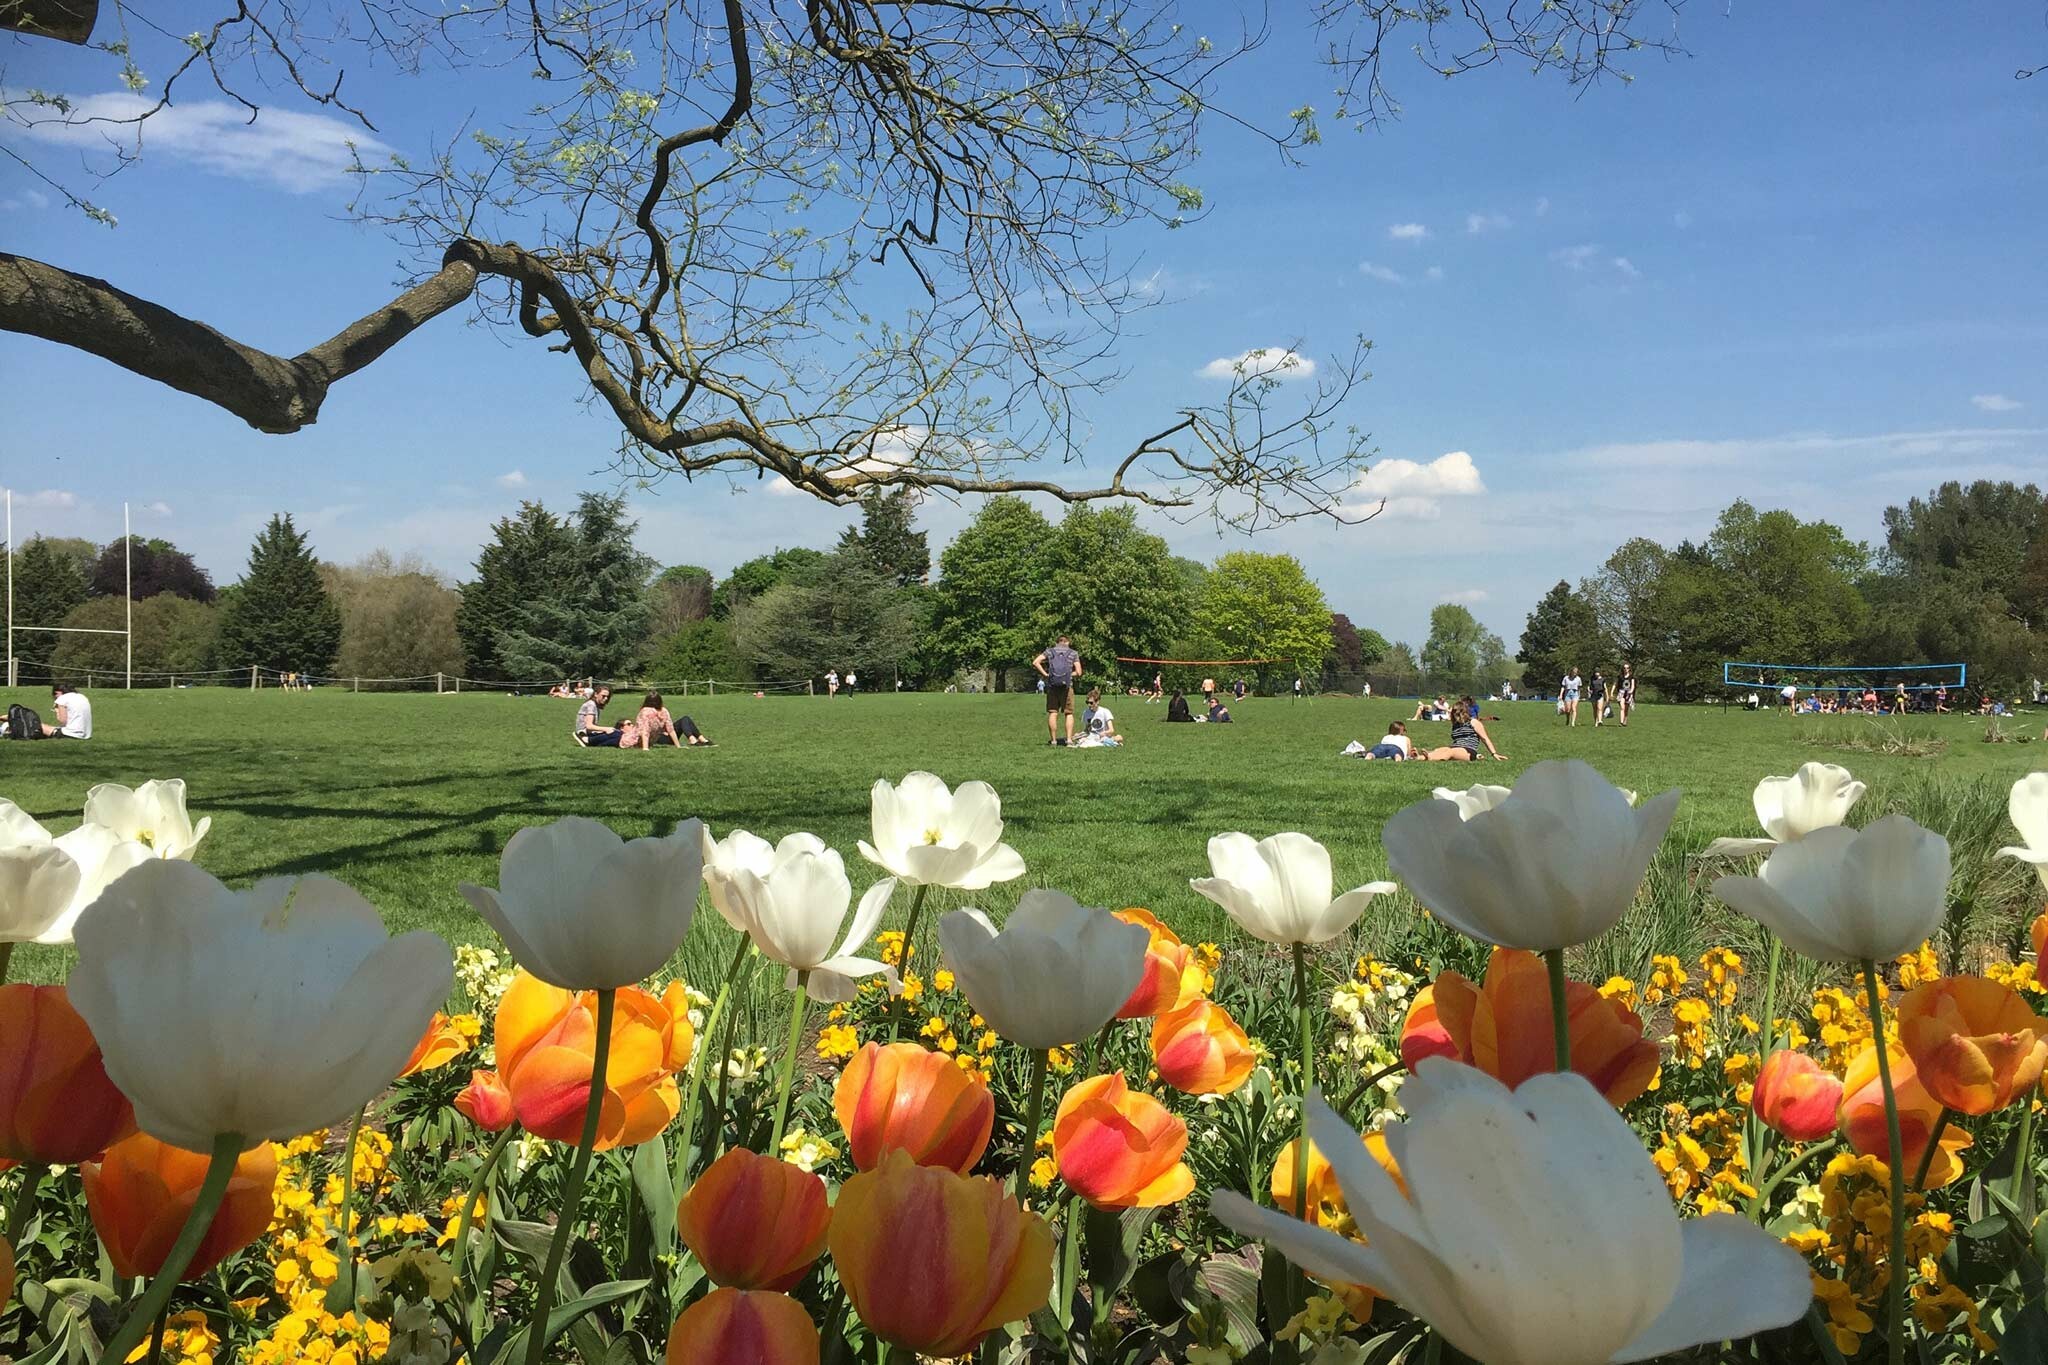 تعرف على أجمل حدائق أوكسفورد التي ننصح بزيارتها 